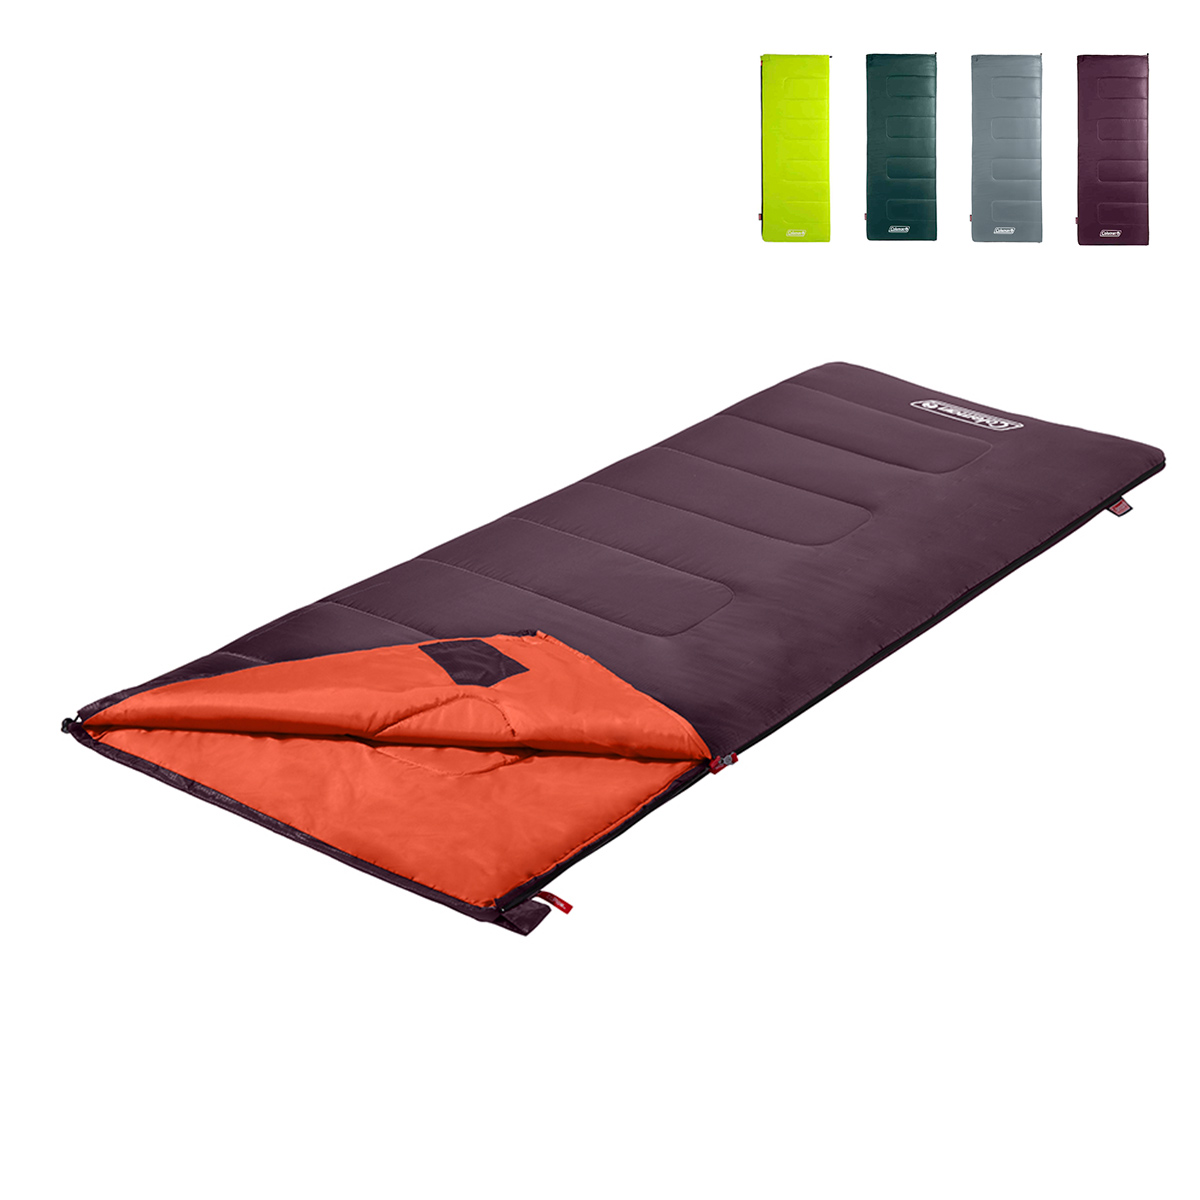 Bolsa De Dormir Coleman Saco Sleeping Bag 187x72cm Colores